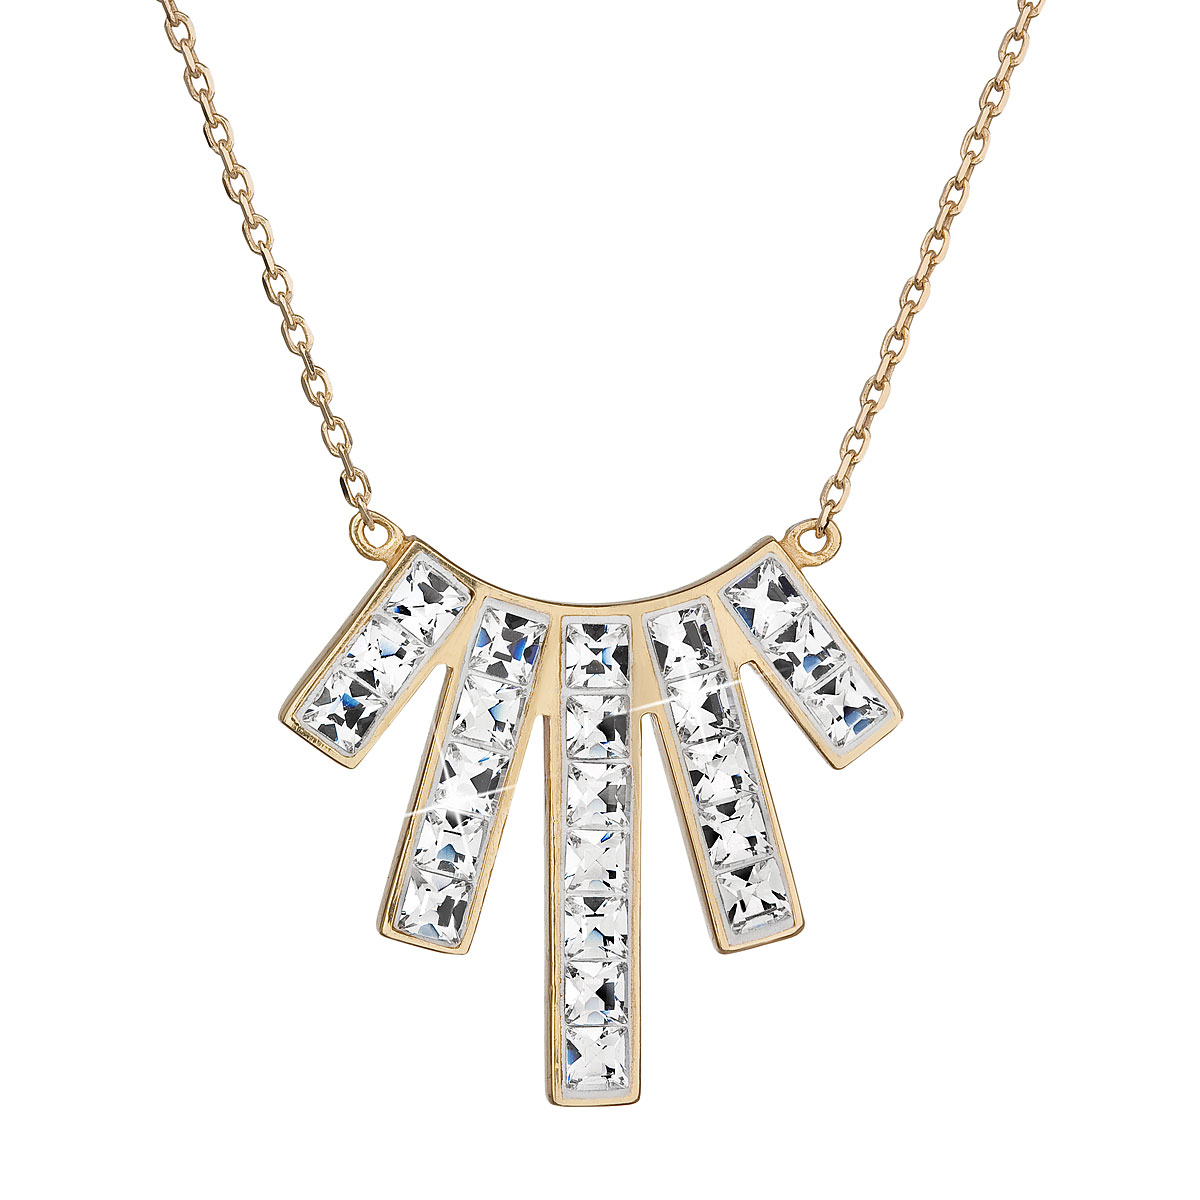 Evolution Group Stříbrný náhrdelník s krystaly Swarovski bílý obdélník 32024.1 krystal au